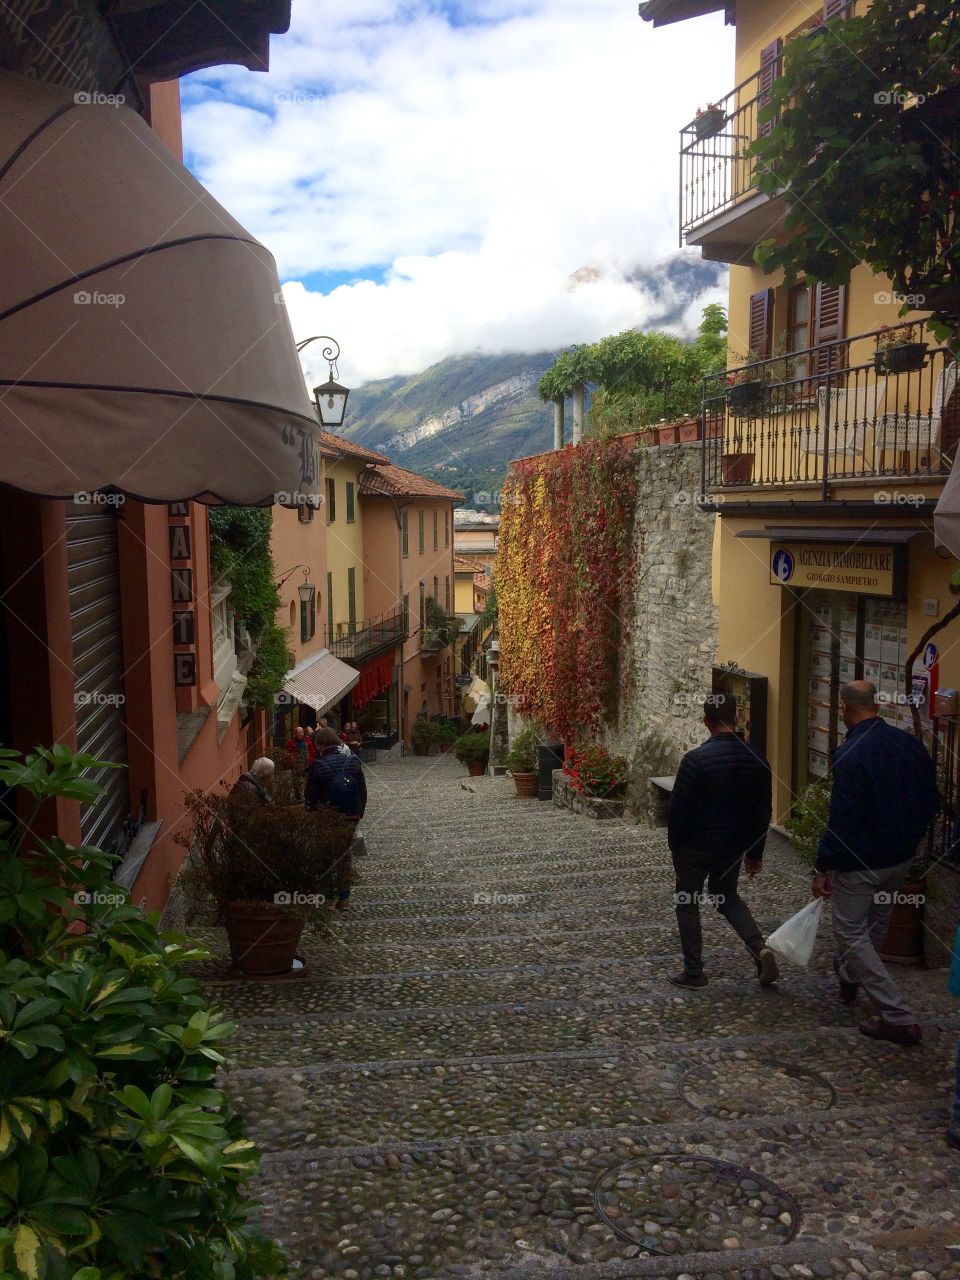 Stroll through Bellagio